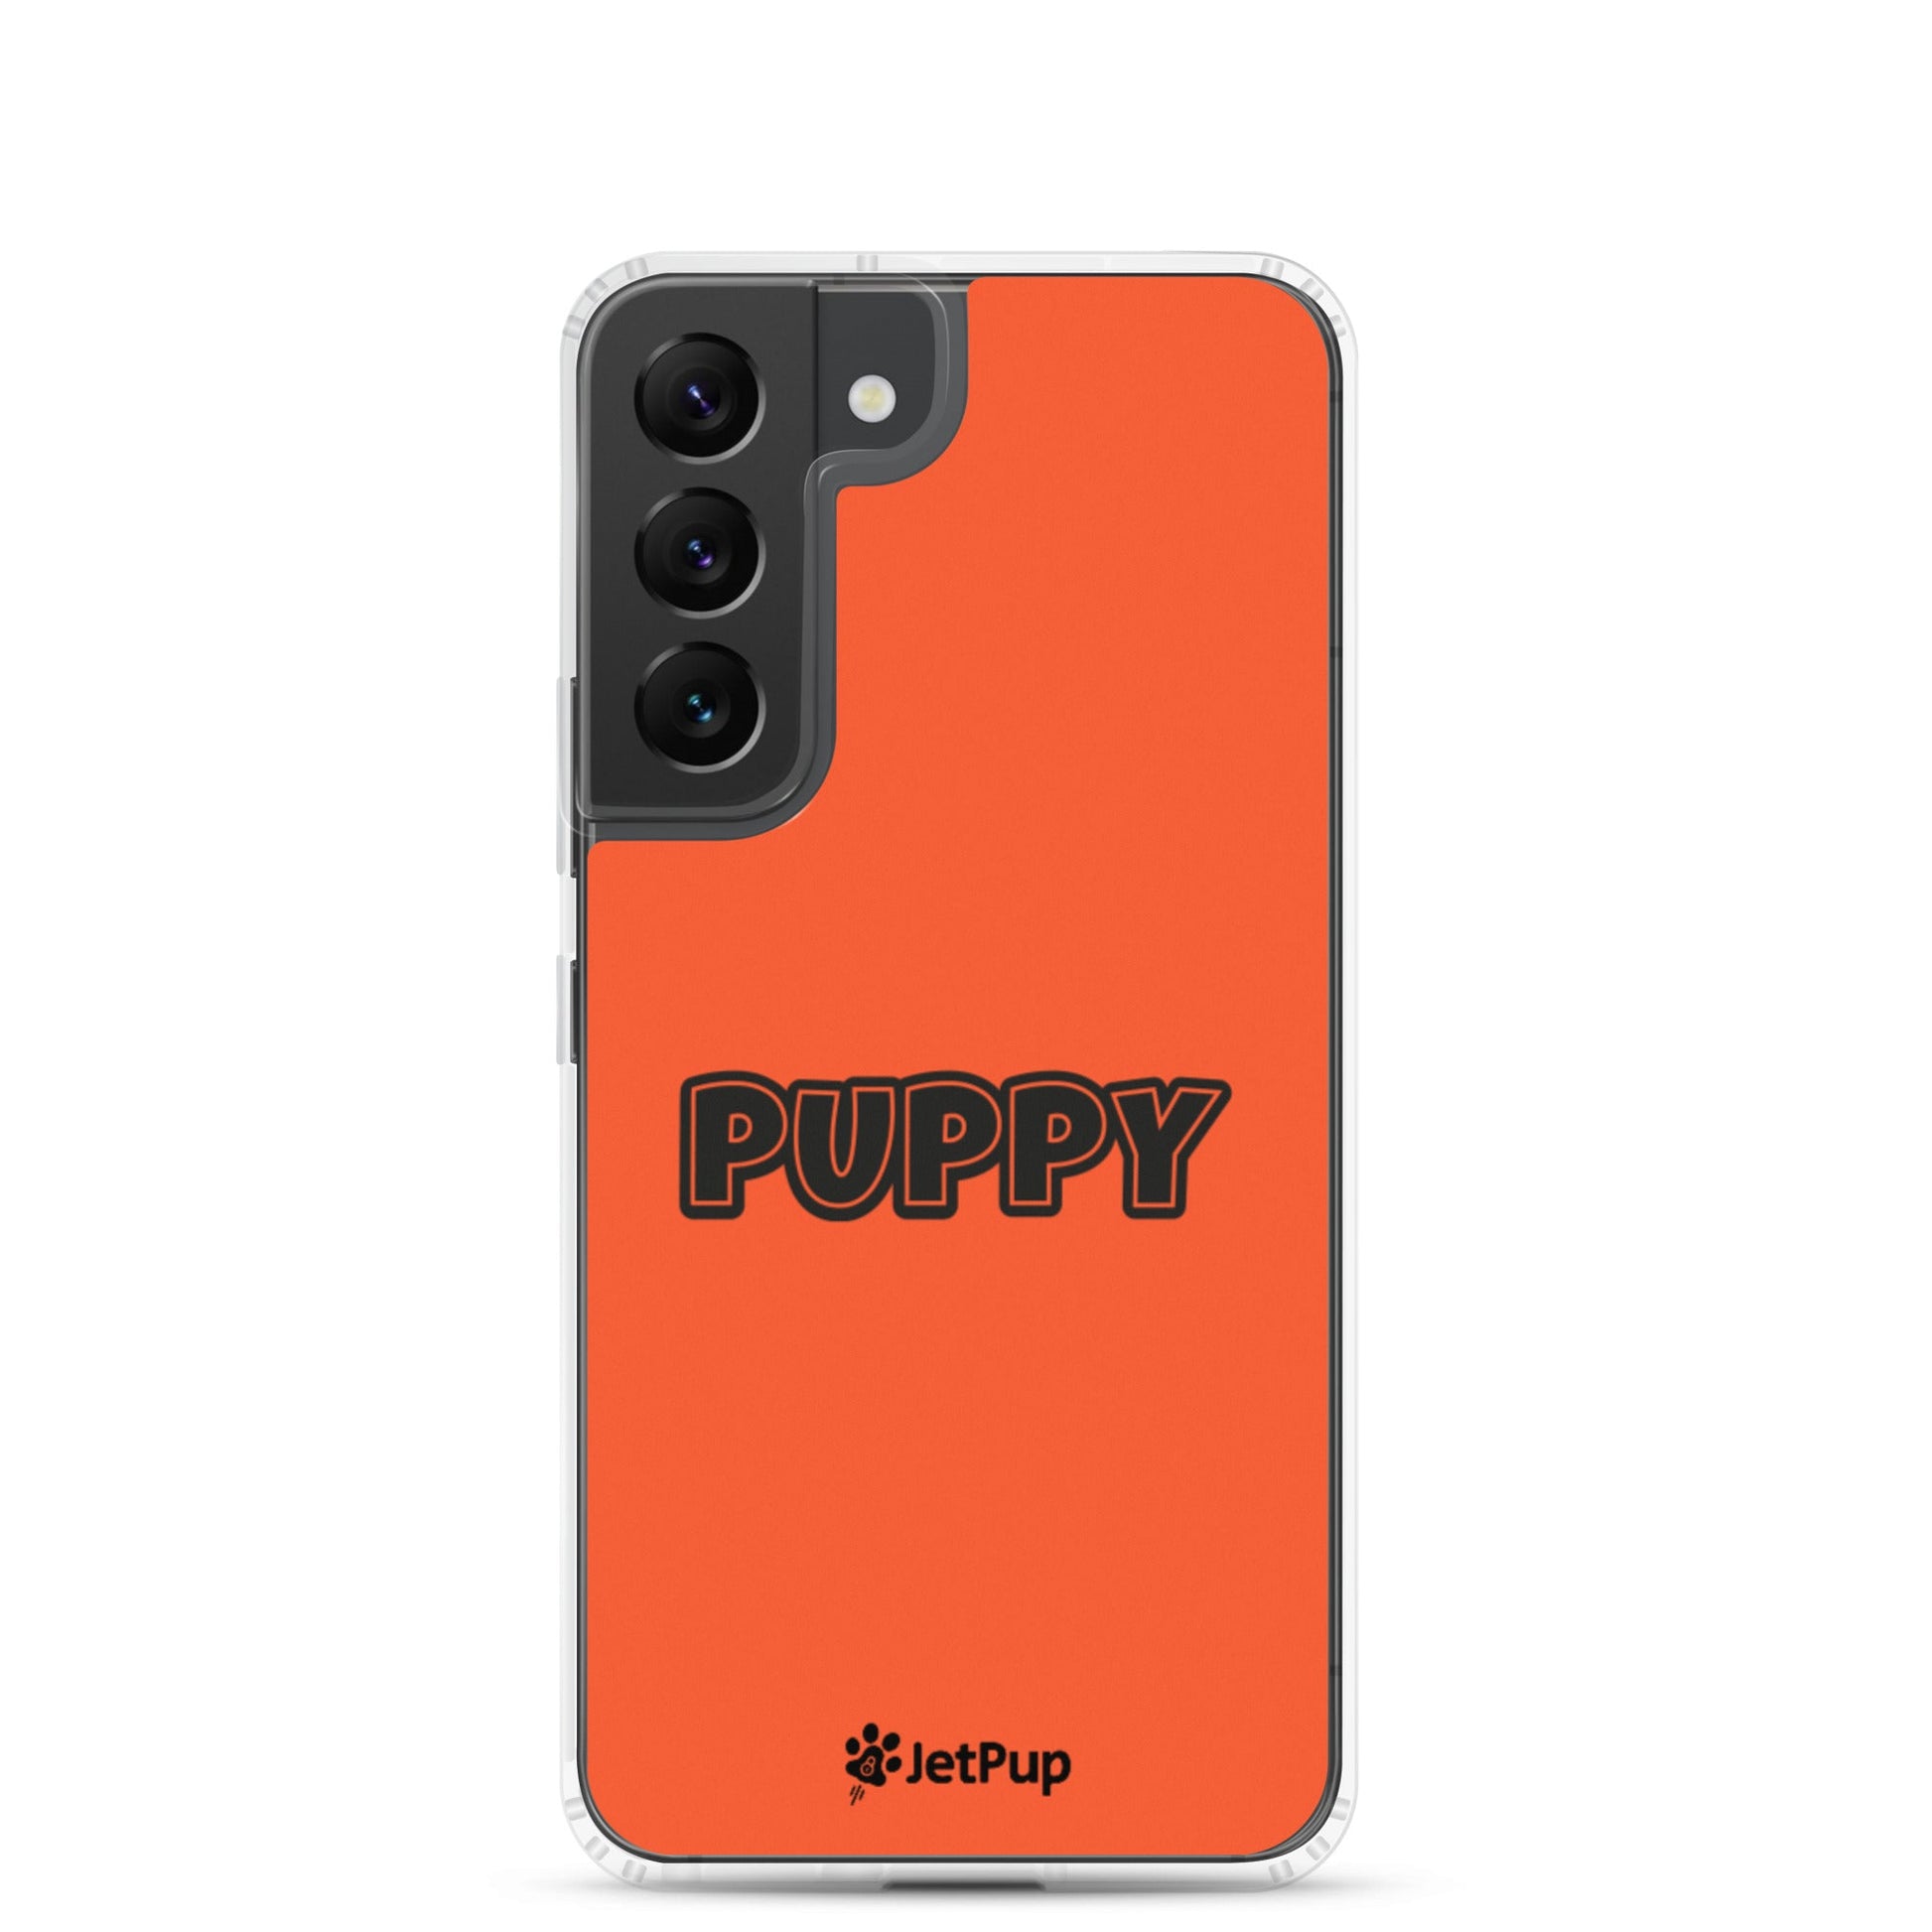 Puppy Samsung Case - Orange - JetPup